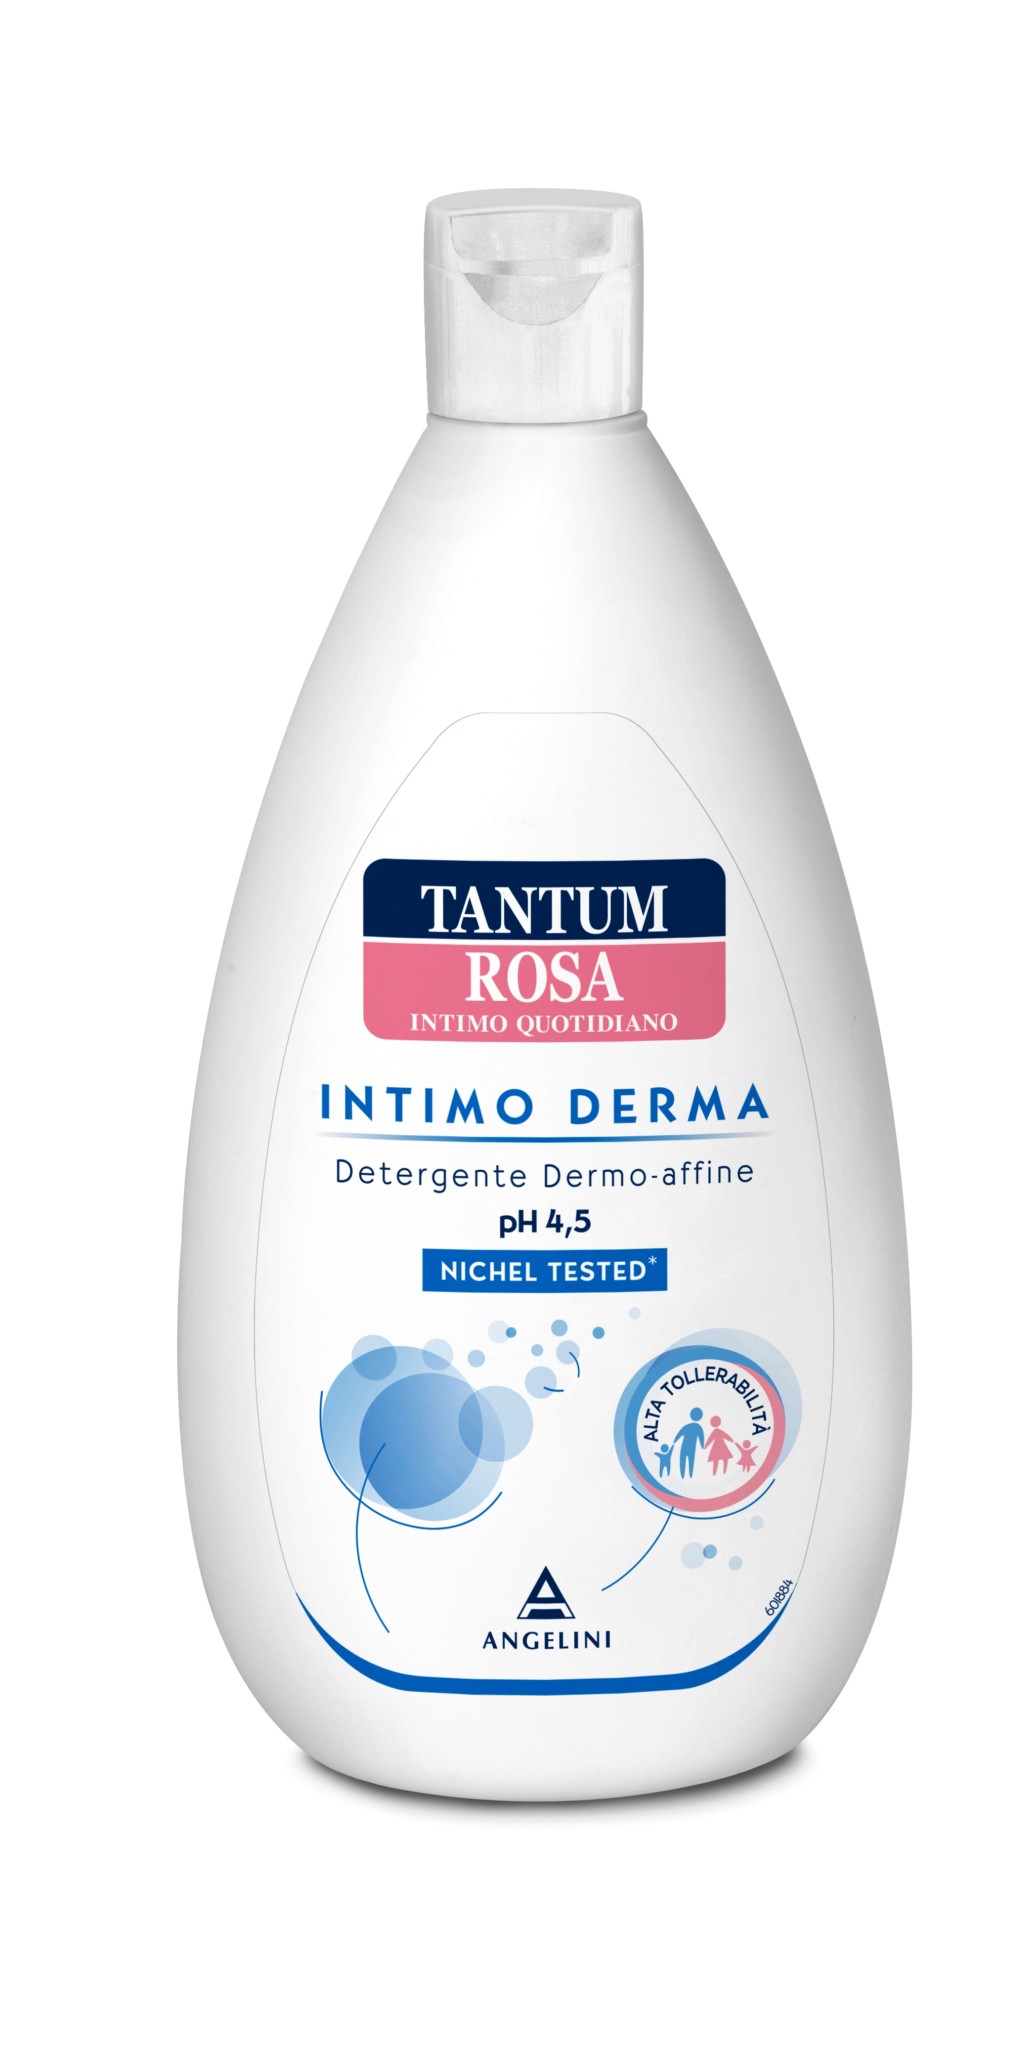 Nuovo Tantum Rosa Intimo Derma, il detergente per il benessere intimo di tutta la famiglia